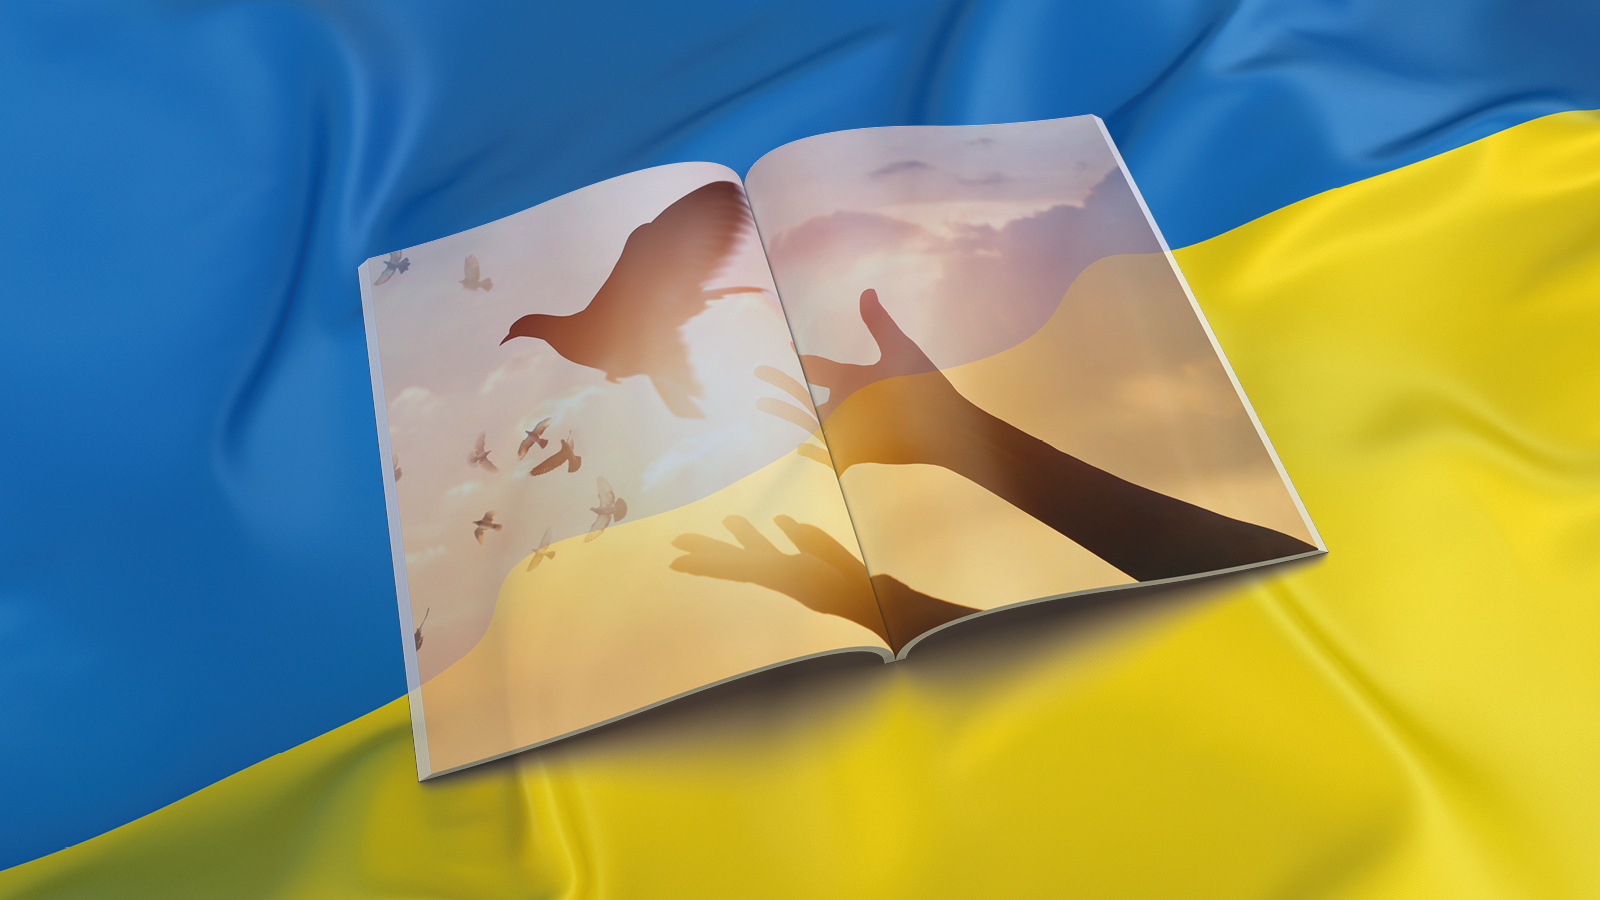 Aikakausmedia ry:n tekemästä kyselystä jäsenkustantajien päätoimittajille käy ilmi, että Ukrainan sota vaikuttaa suomalaiseen aikakausmediakenttään laajasti. Aikakausmedioista lähes 60 prosenttia käsittelee Ukrainan sotaa jollain tavalla.